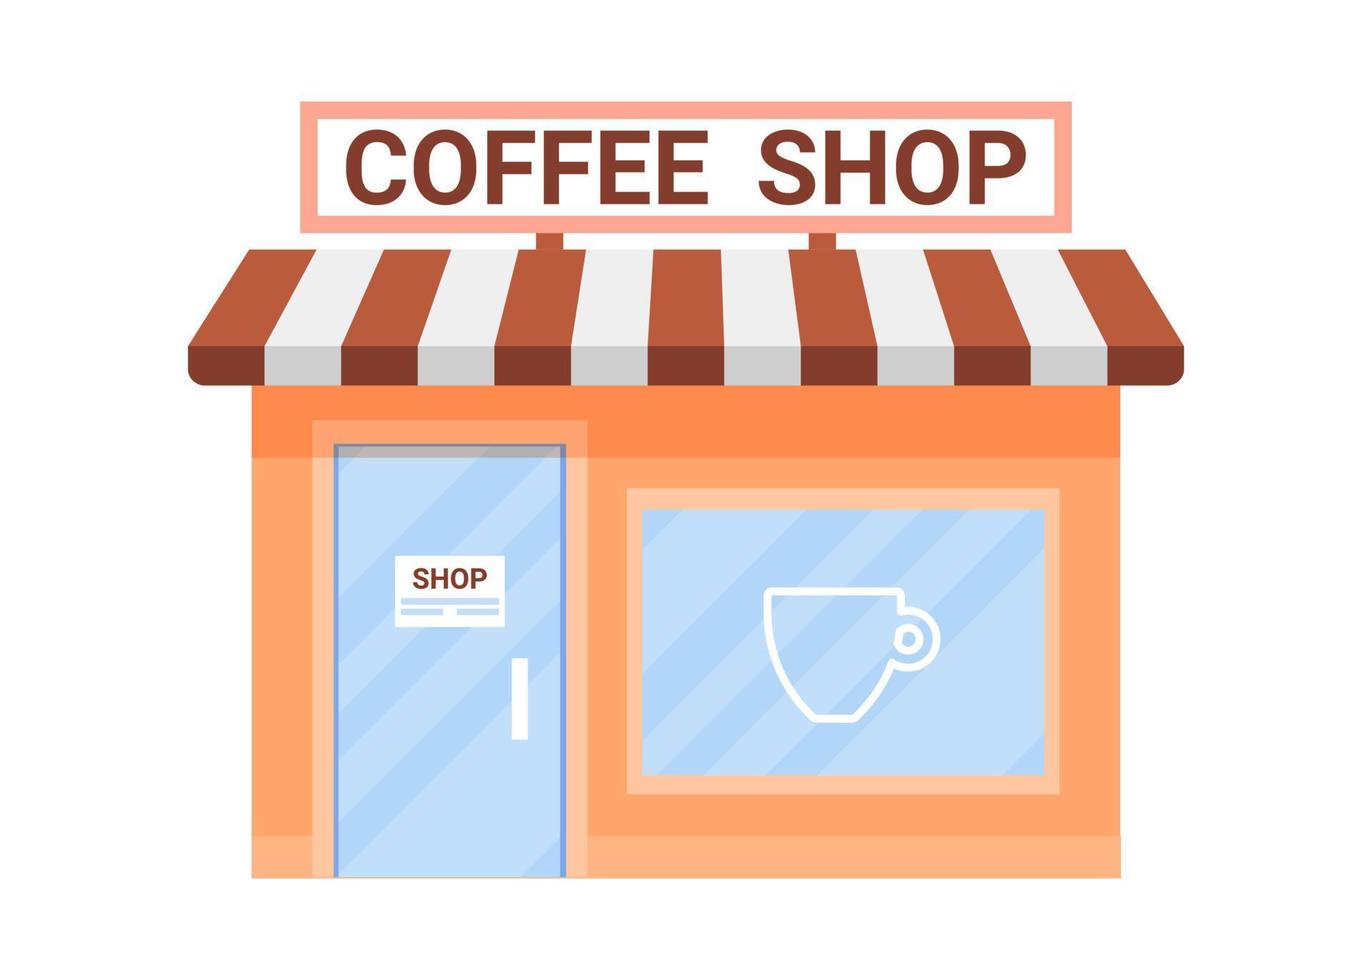 offline kafébyggnad exteriör, kafé i butik. affärscafé för tillverkning av varm dryck cappuccino, americano, latte. liten butik i huset. platt vektor illustration